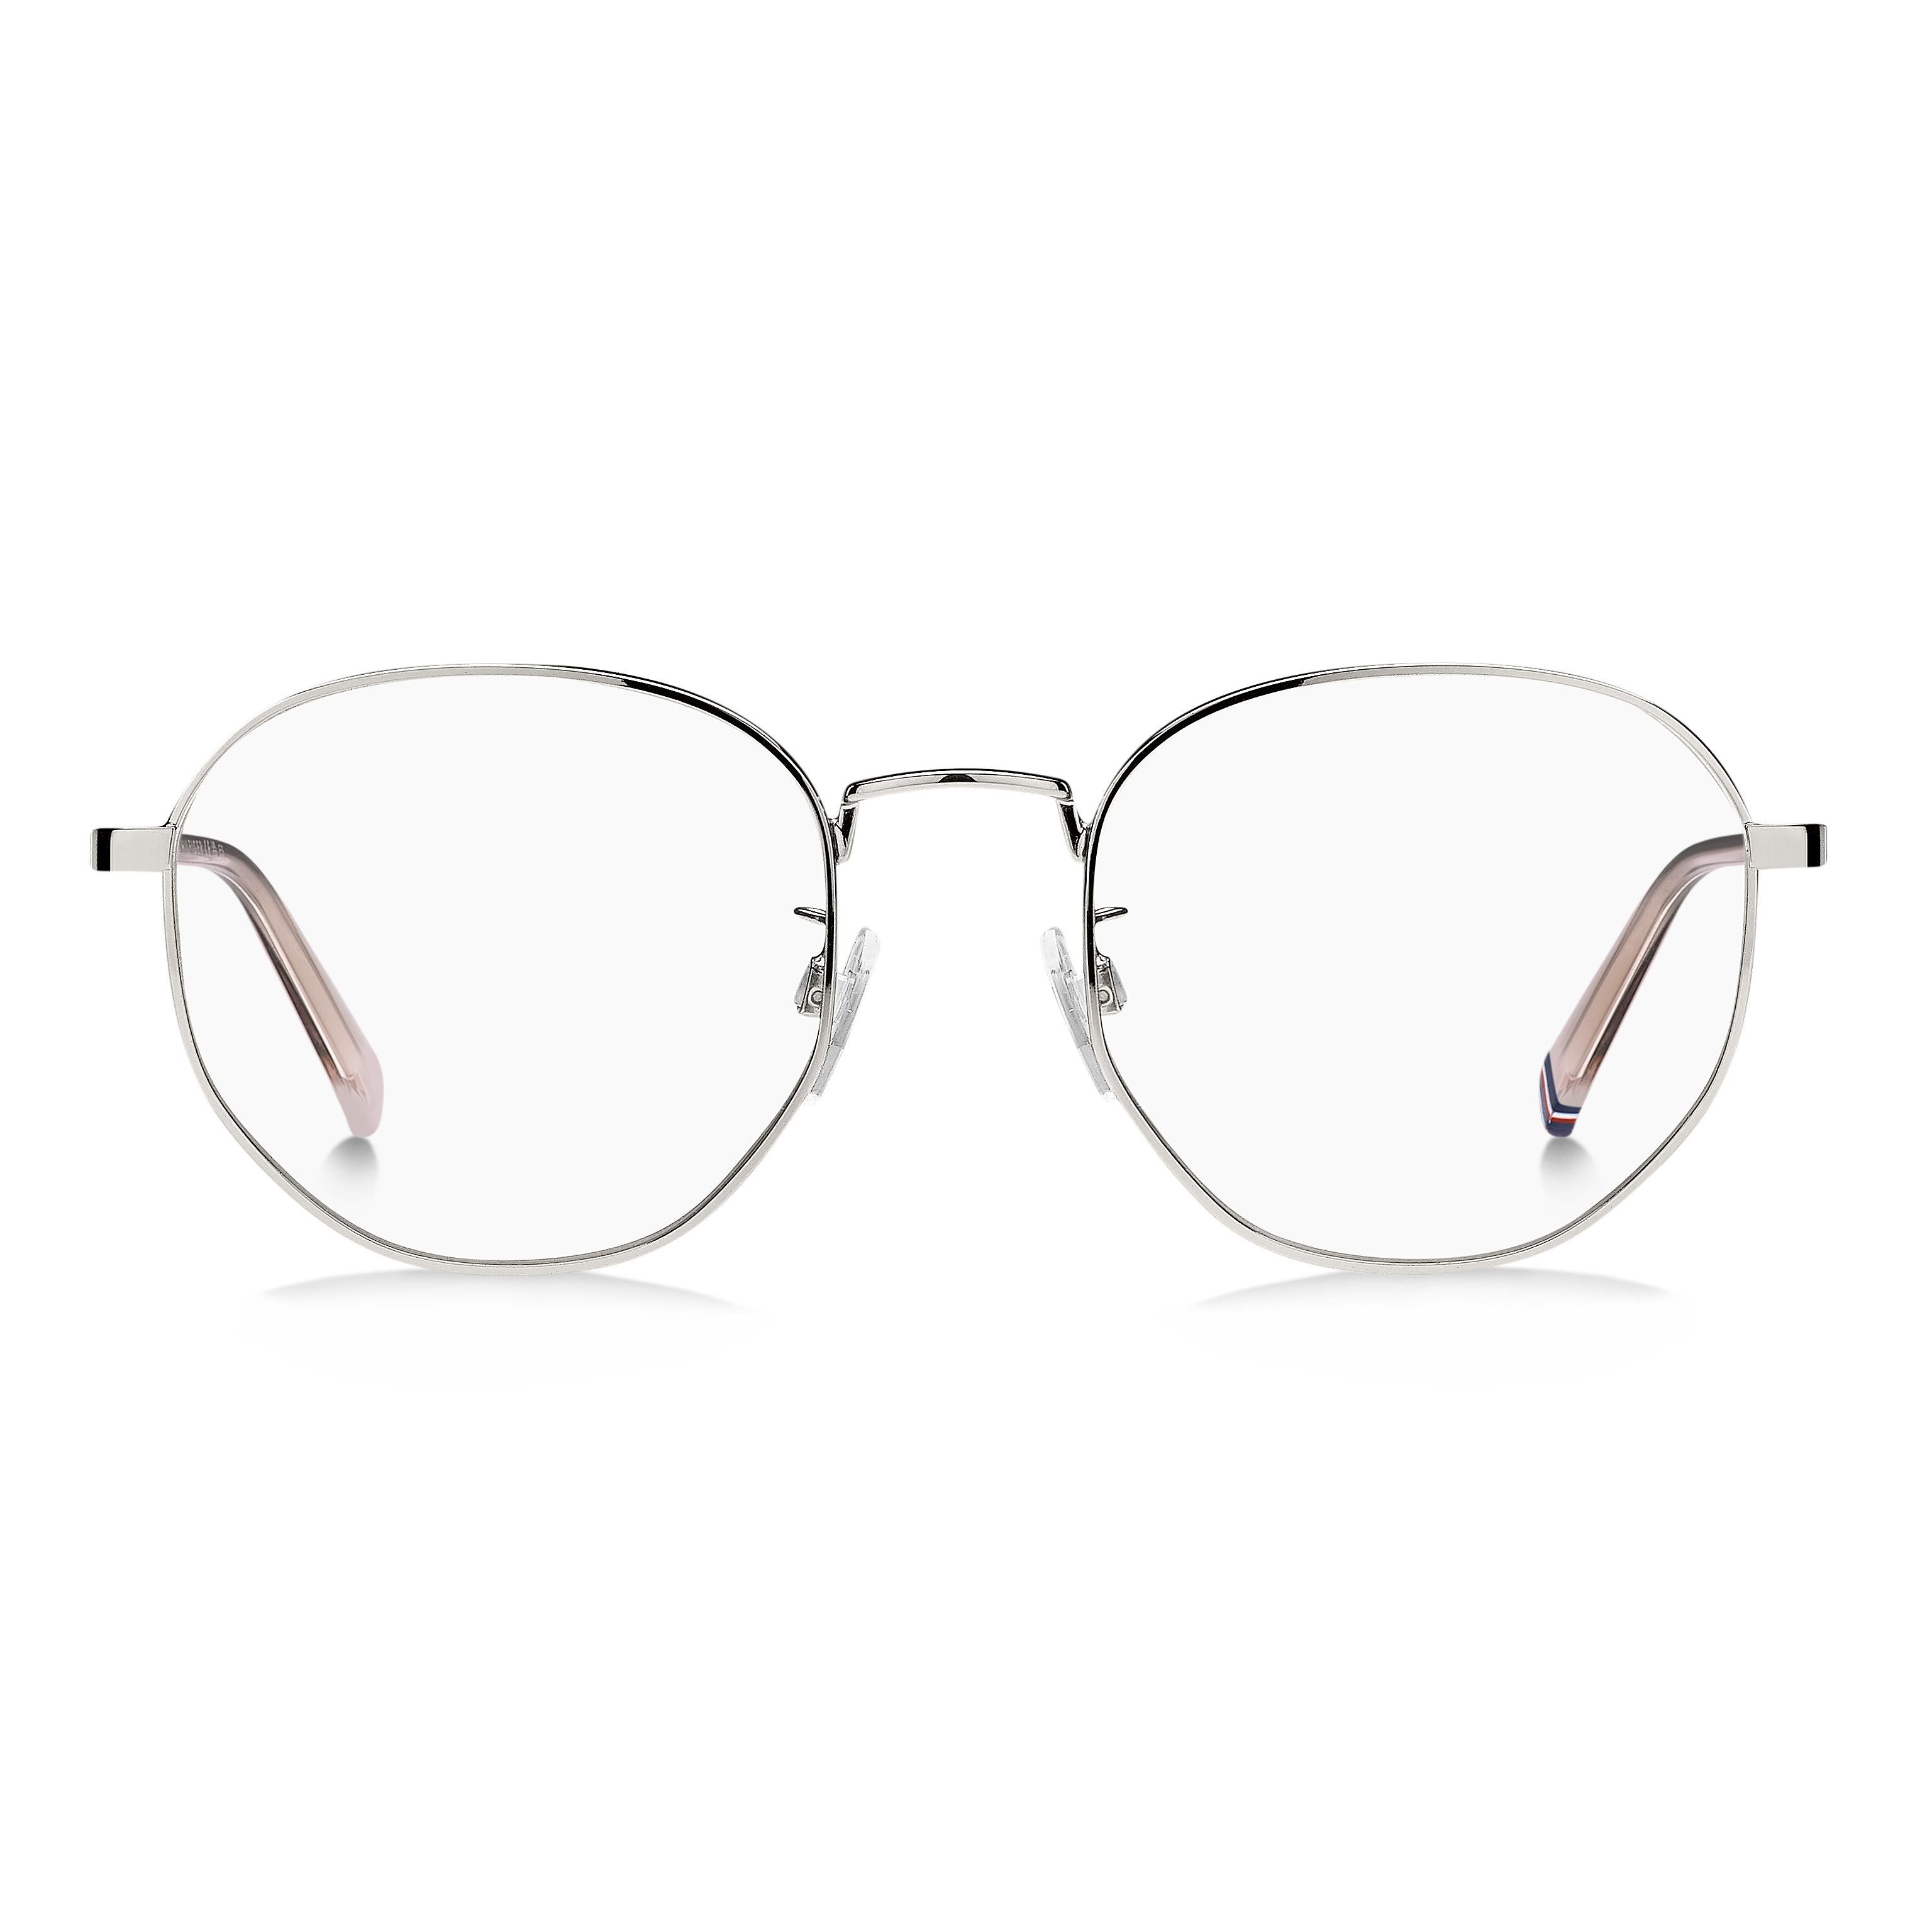 TH 2065 G Round Eyeglasses 010 - size 52